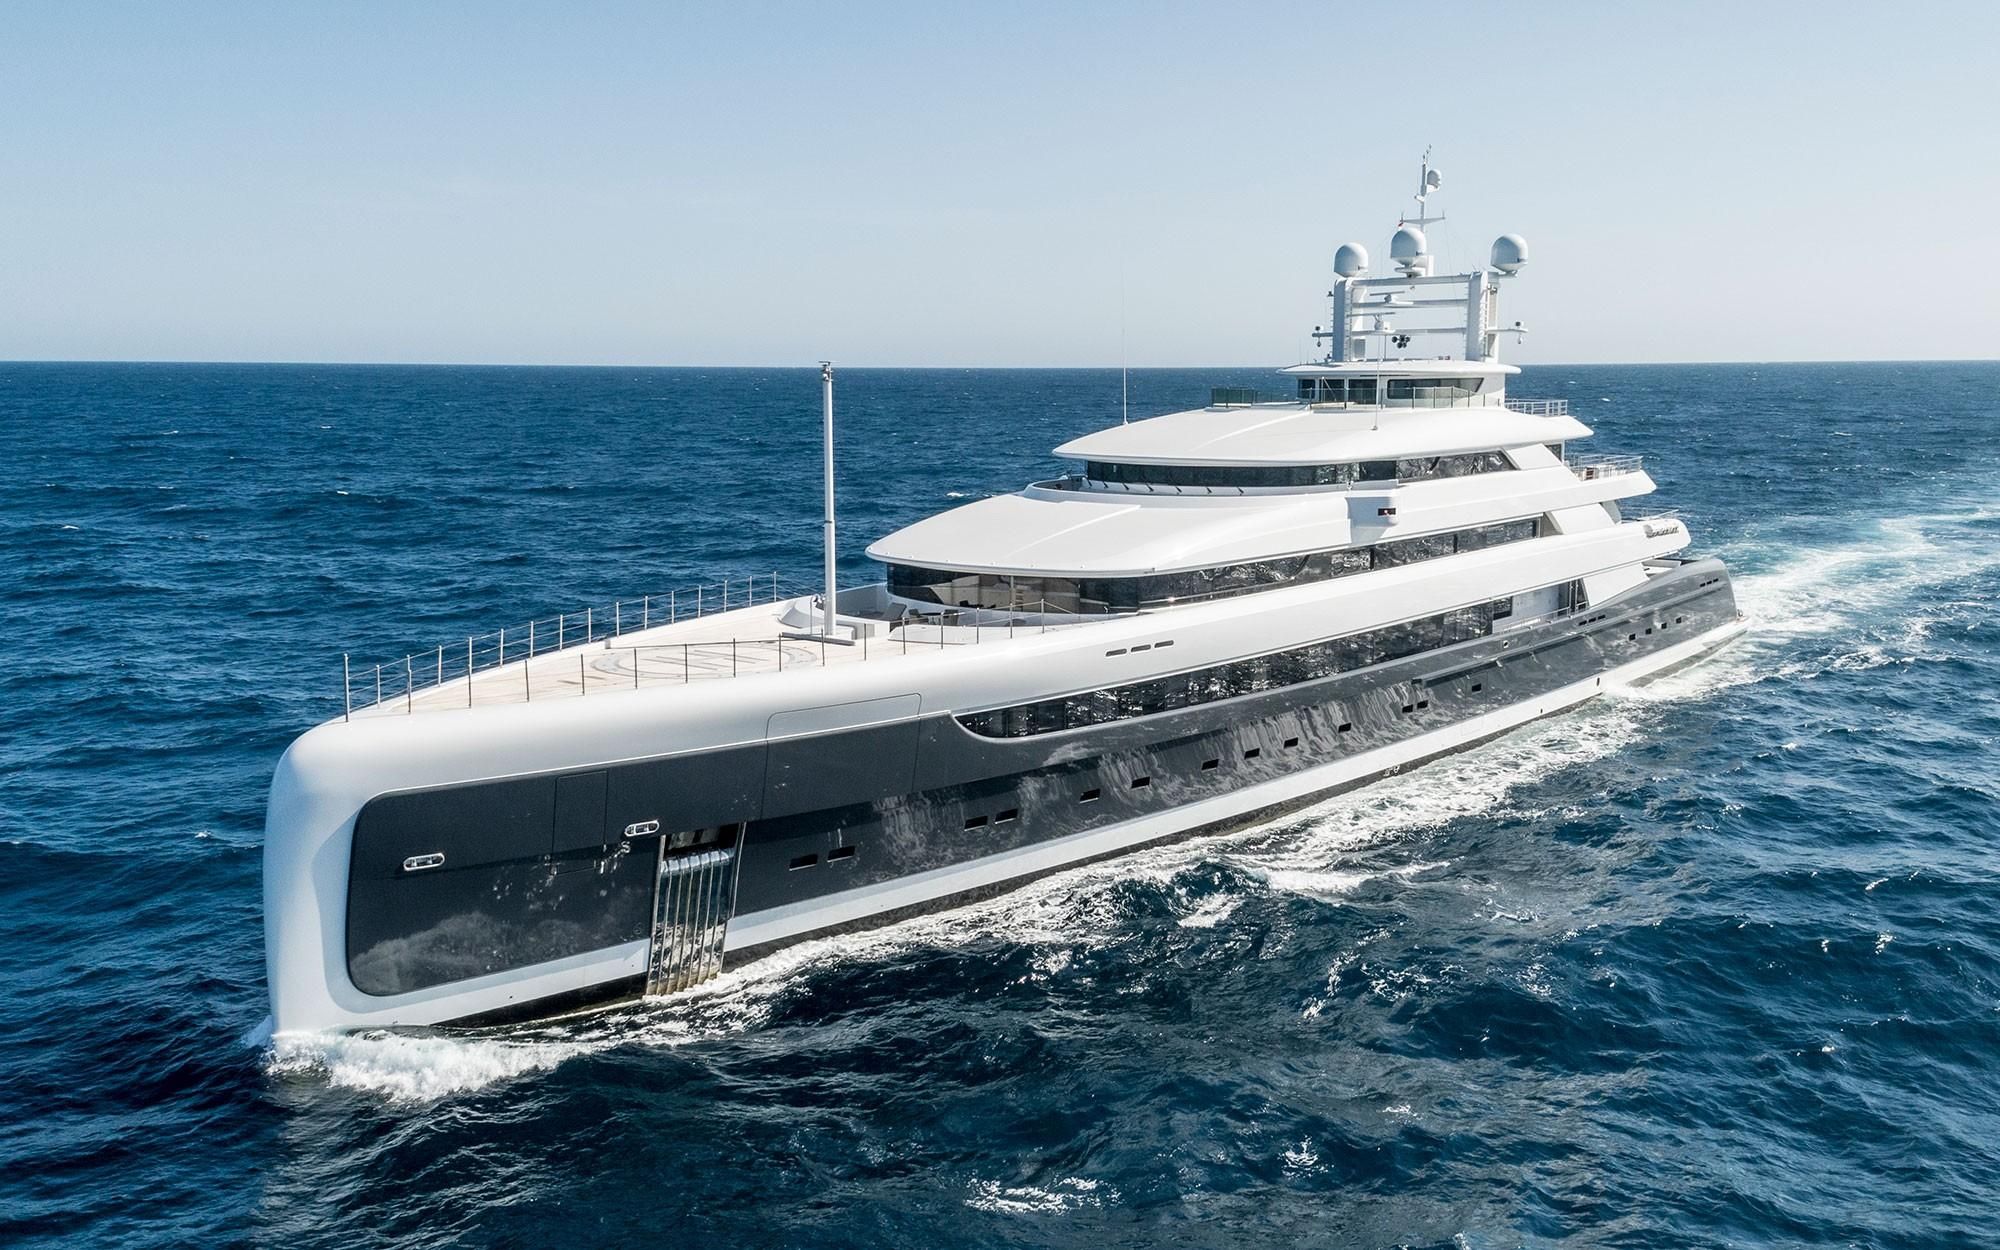 yacht 2 million euro